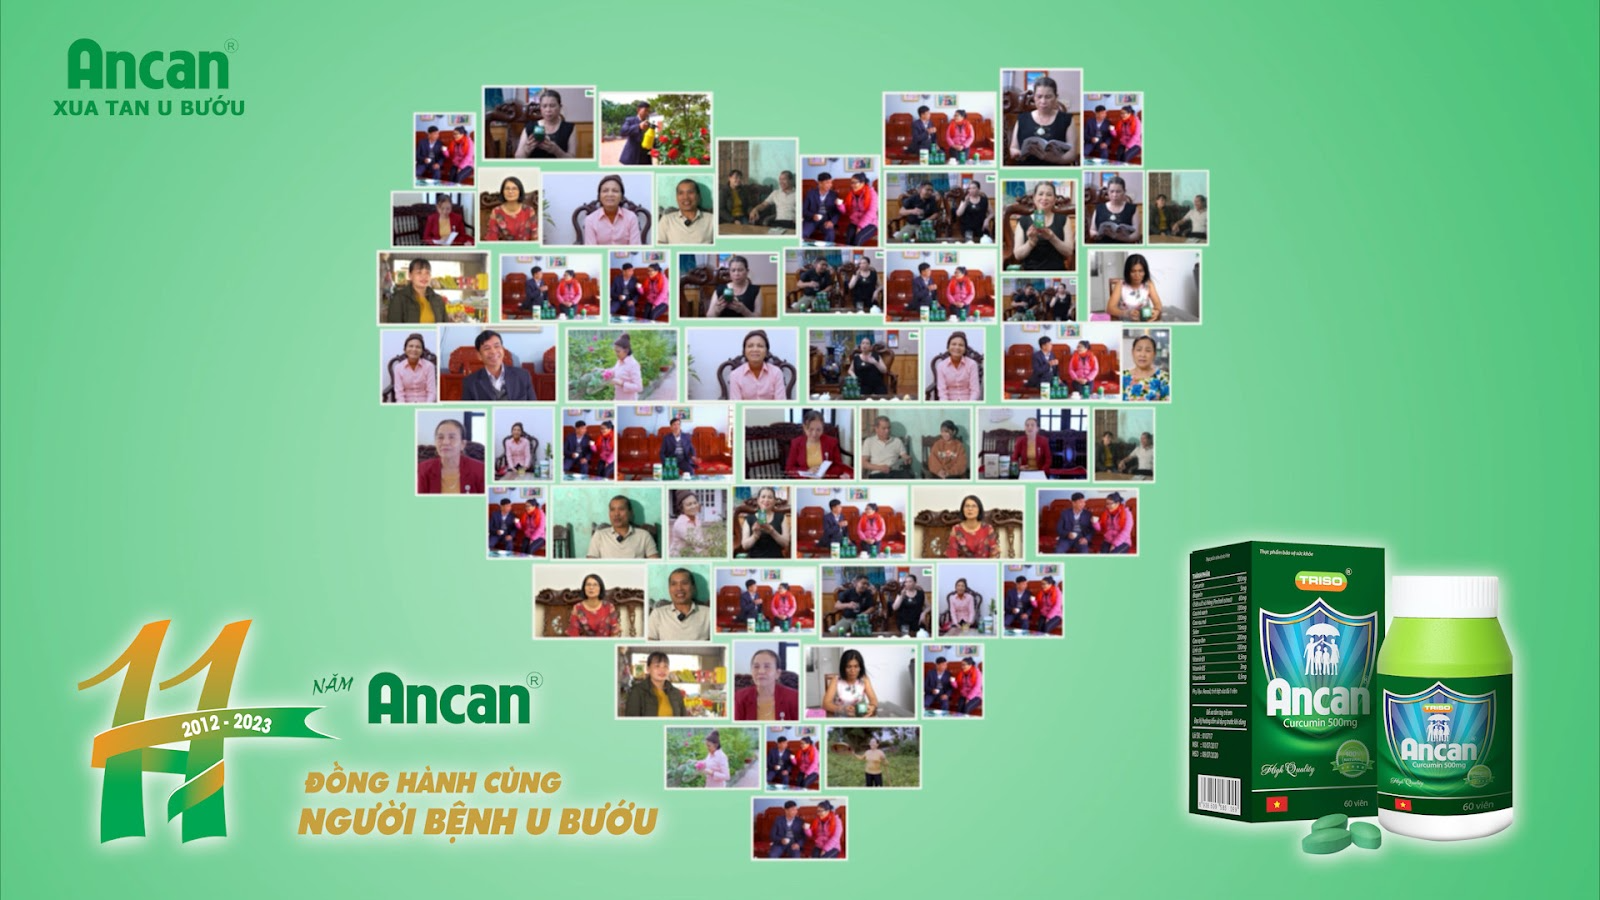 Báo 24h: Nhãn hàng Ancan – 11 năm dấu ấn đồng hành cùng người bệnh u bướu